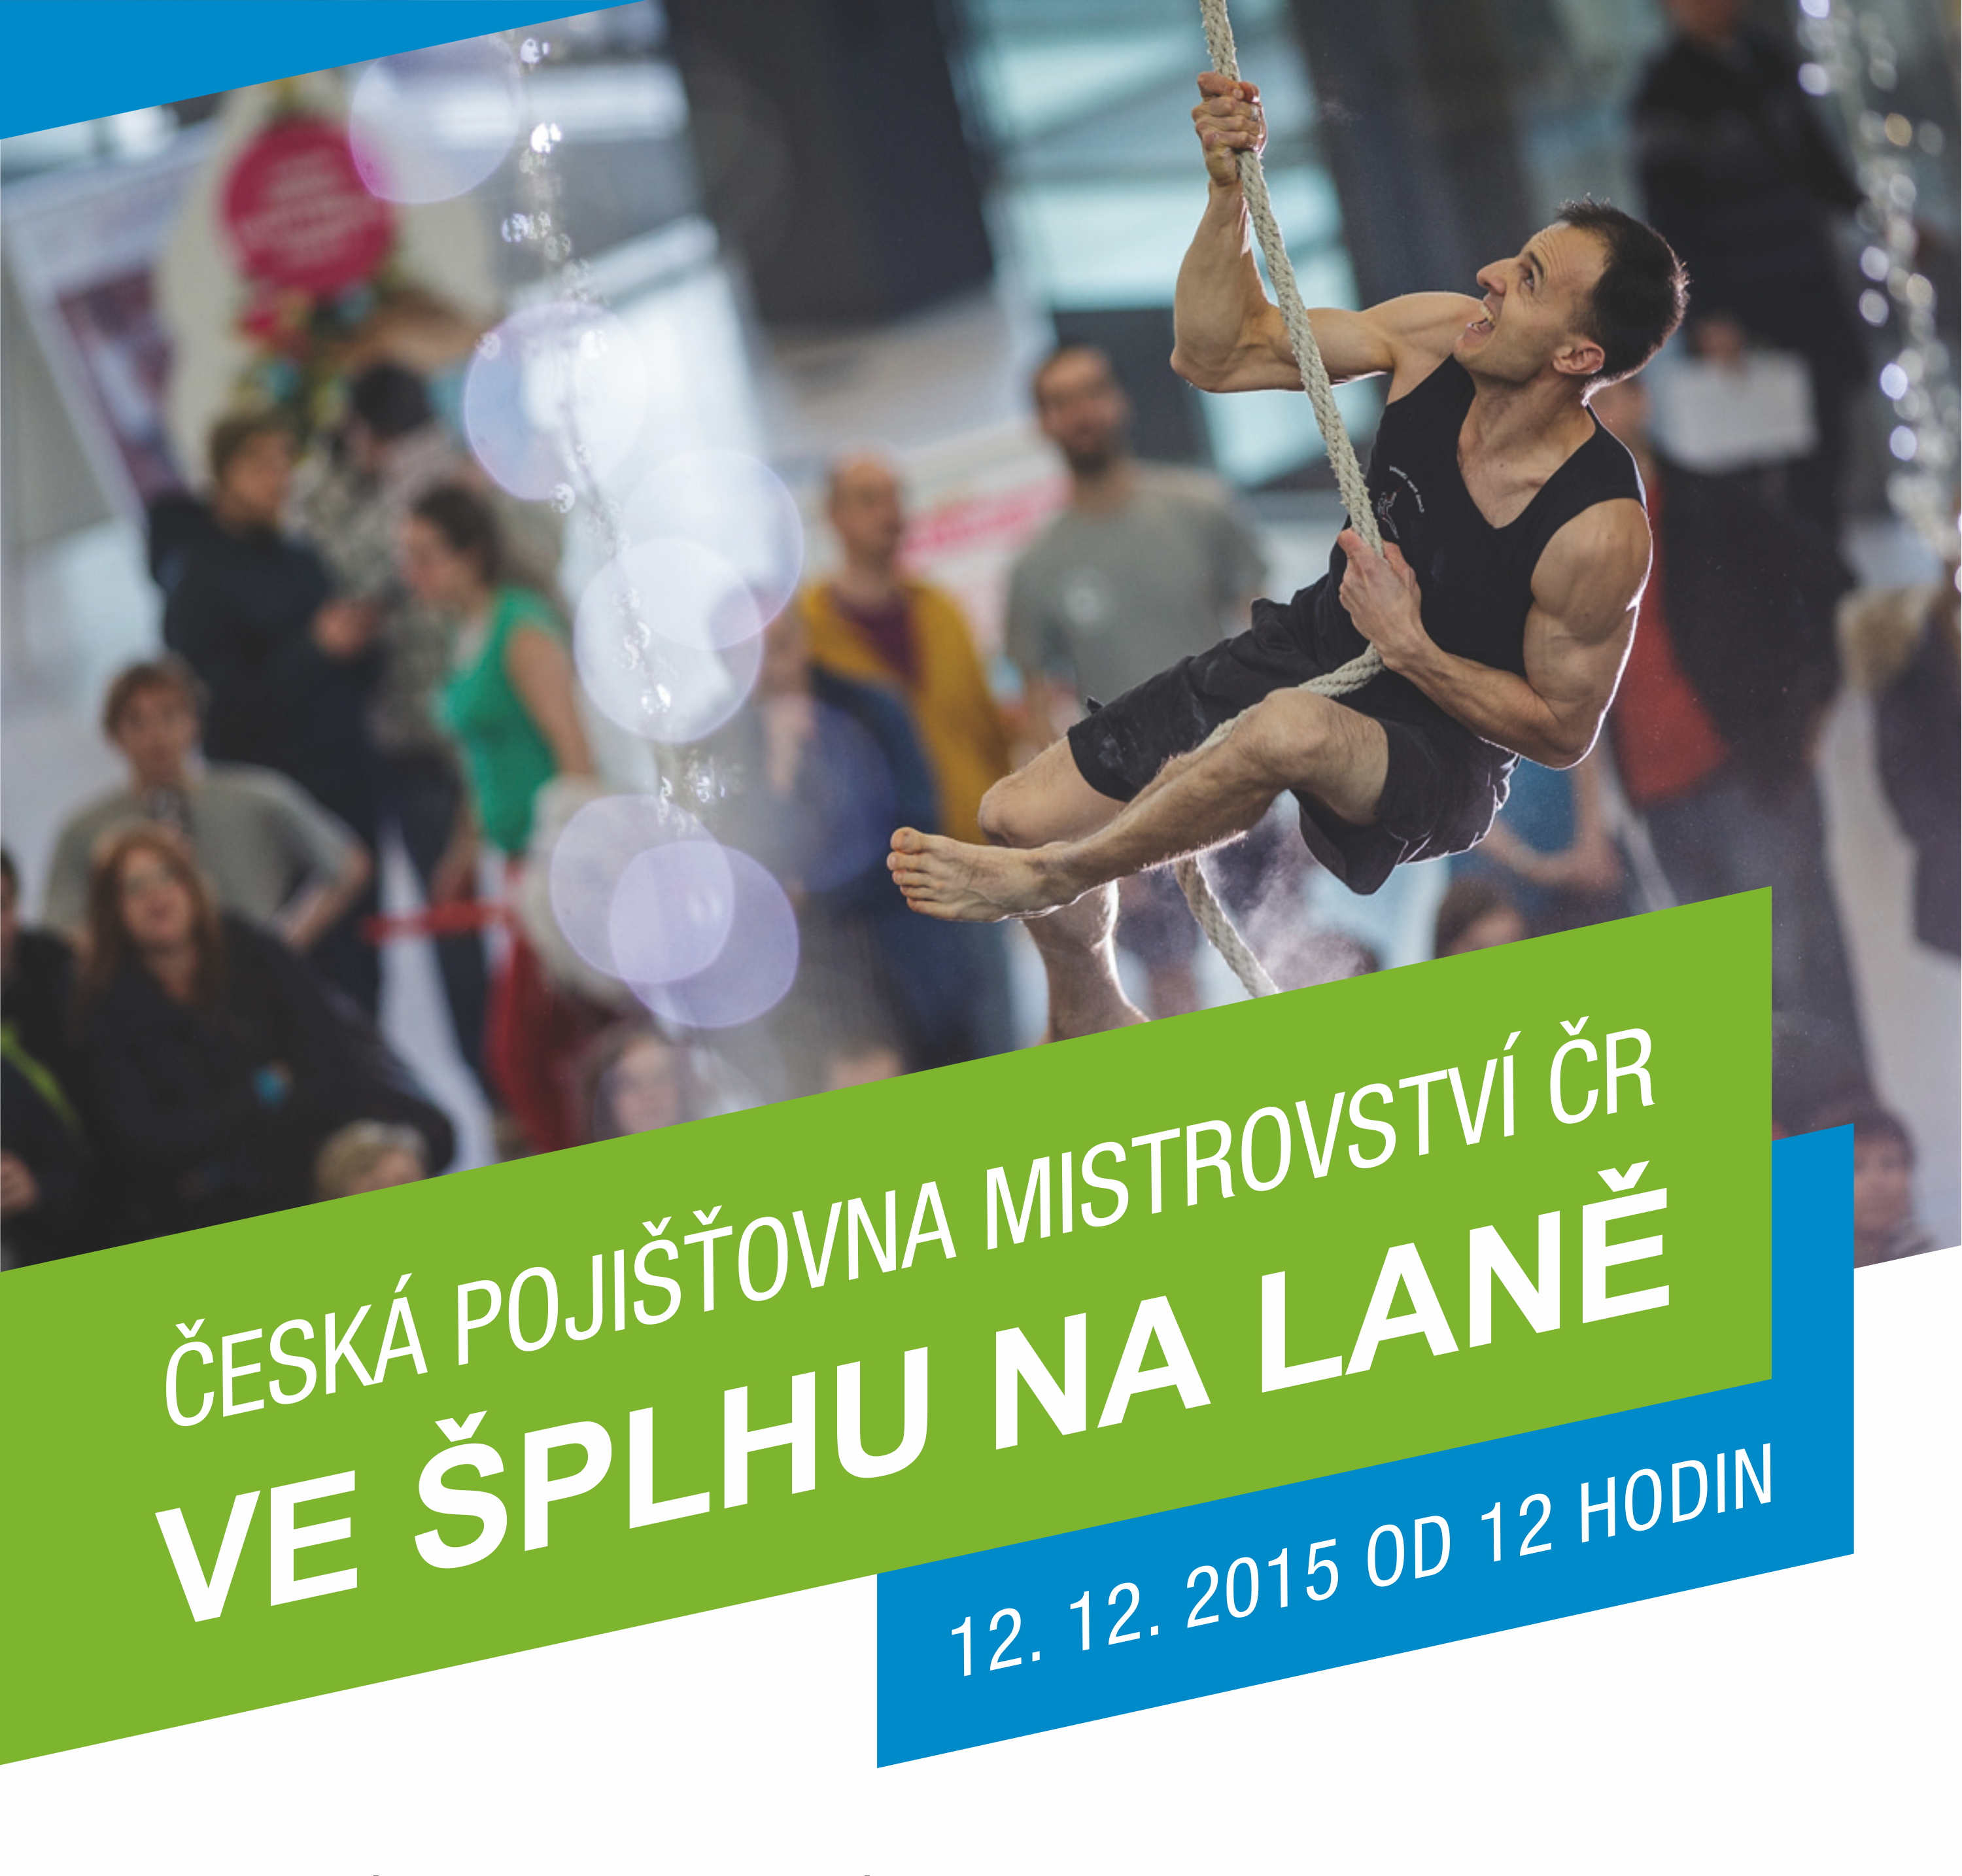 Česká pojišťovna Mistrovství České republiky ve šplhu na laně 2015 - Plakát